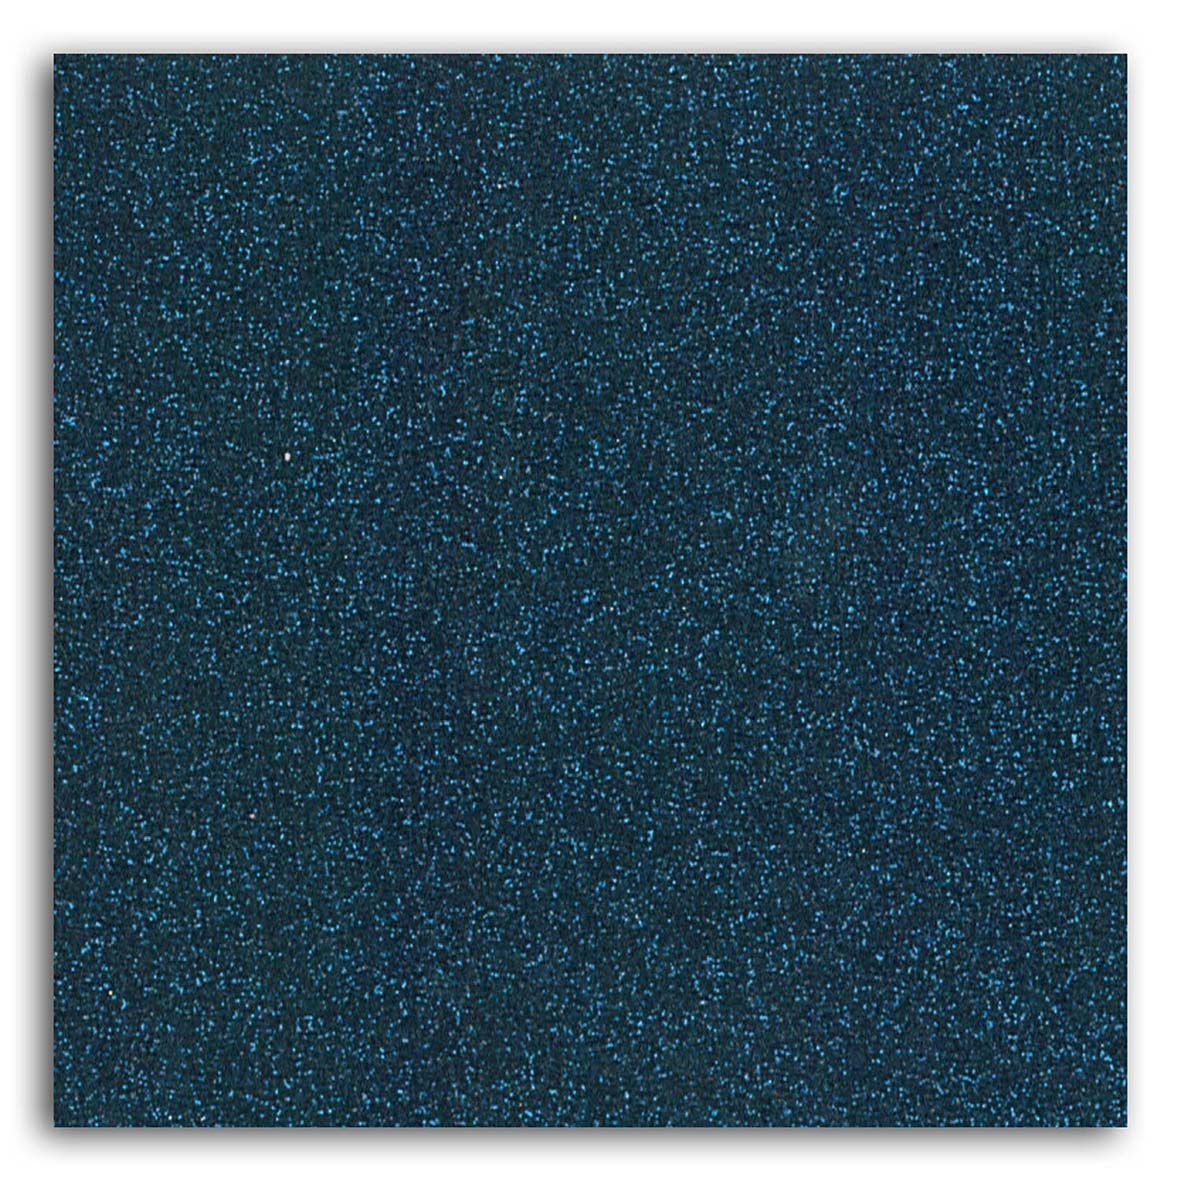 Iron-on glitter fabric - Midnight Blue